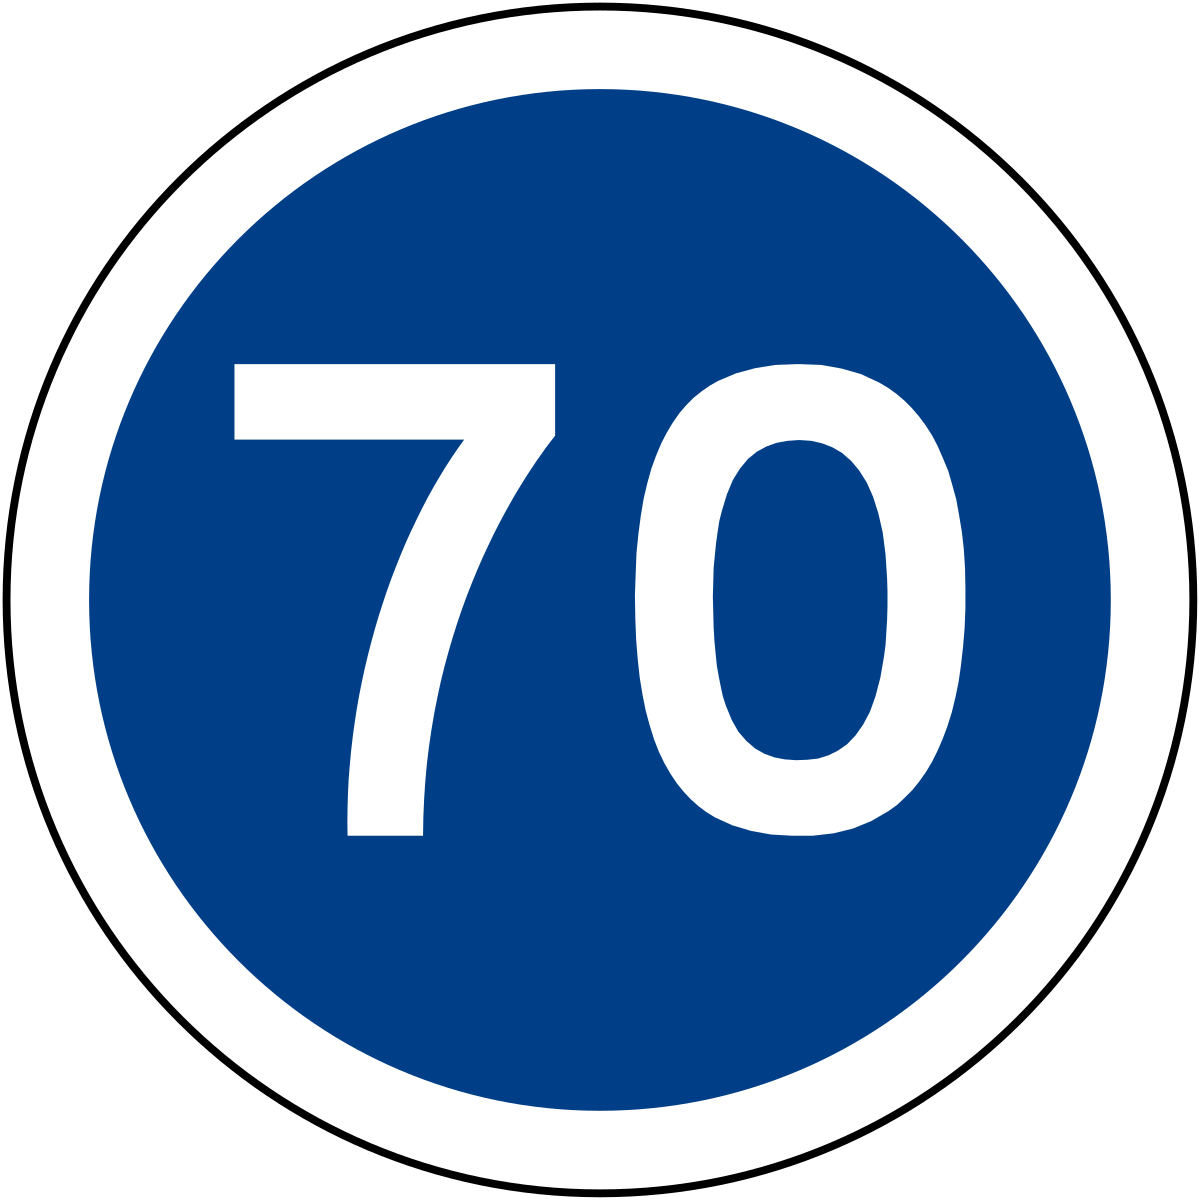 Знак ограничение минимальной скорости. Дорожный знак Рекомендуемая скорость 70. Знаки ограничения скорости на синем фоне. Ограничение минимальной скорости 70.